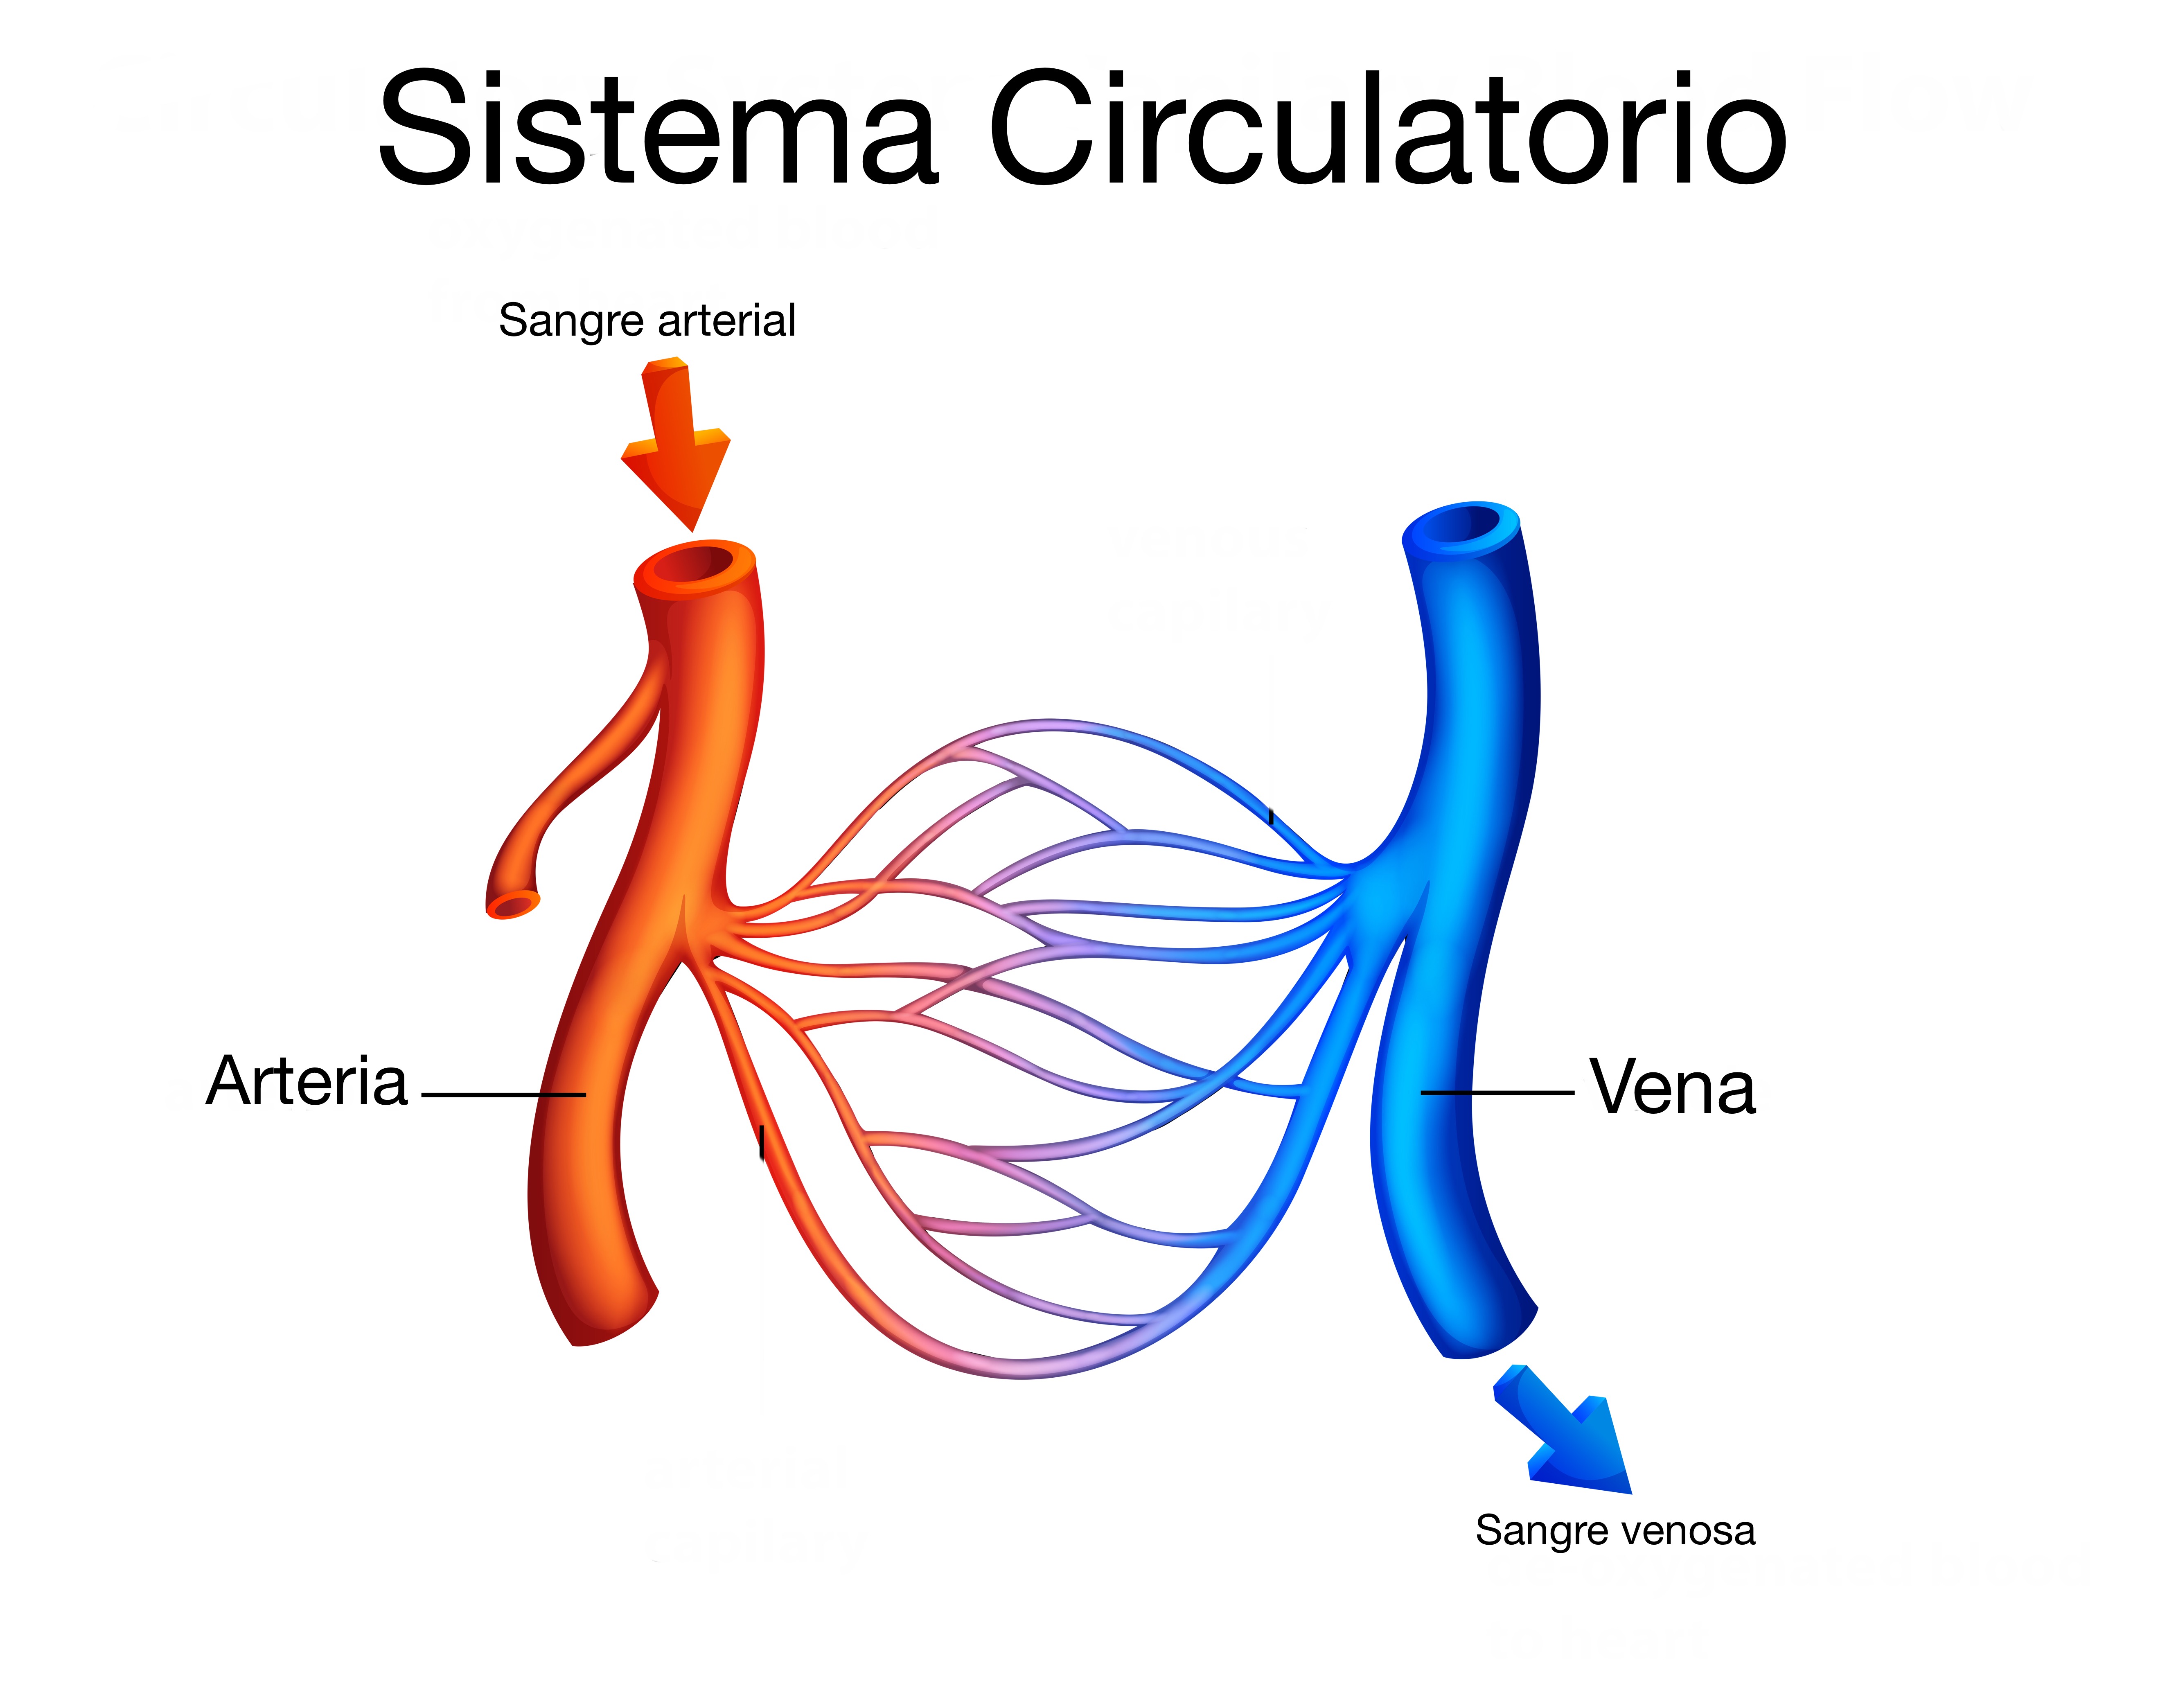 El sistema circulatorio: ¿Qué es y cómo funciona?